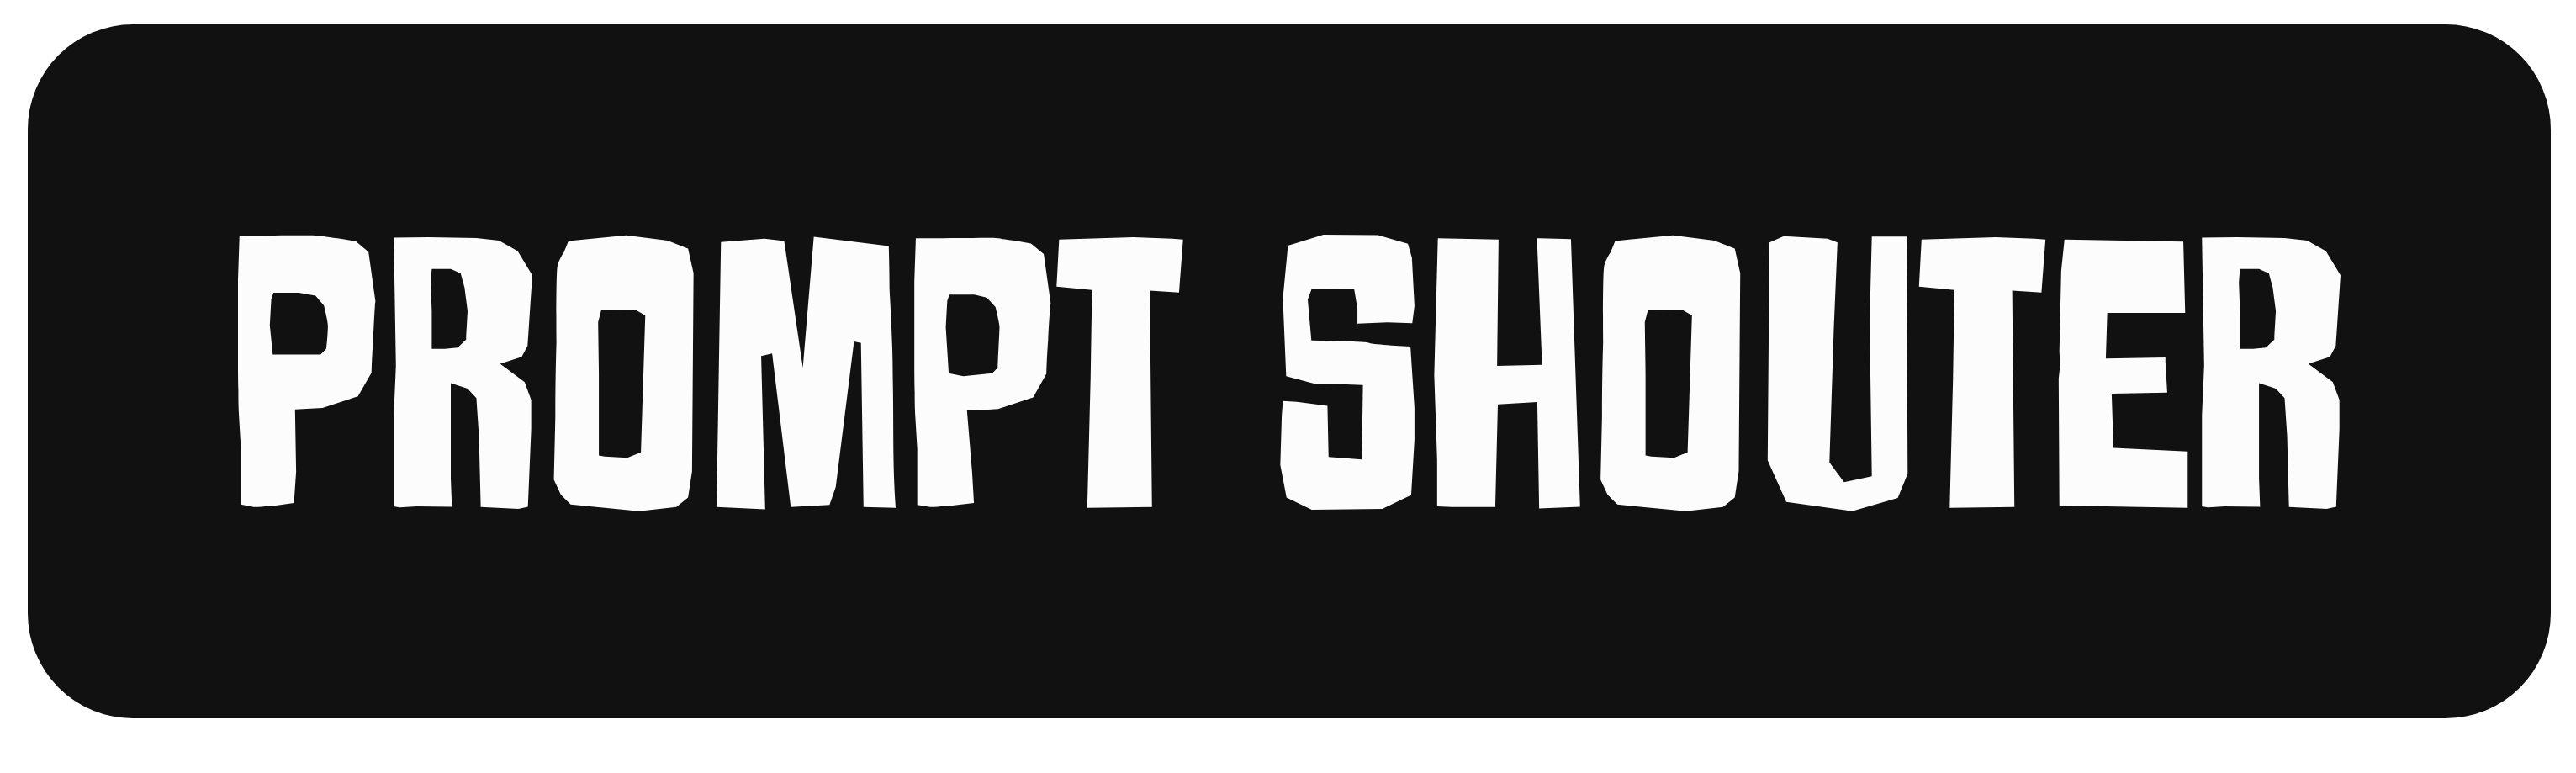 prompt shouter logo